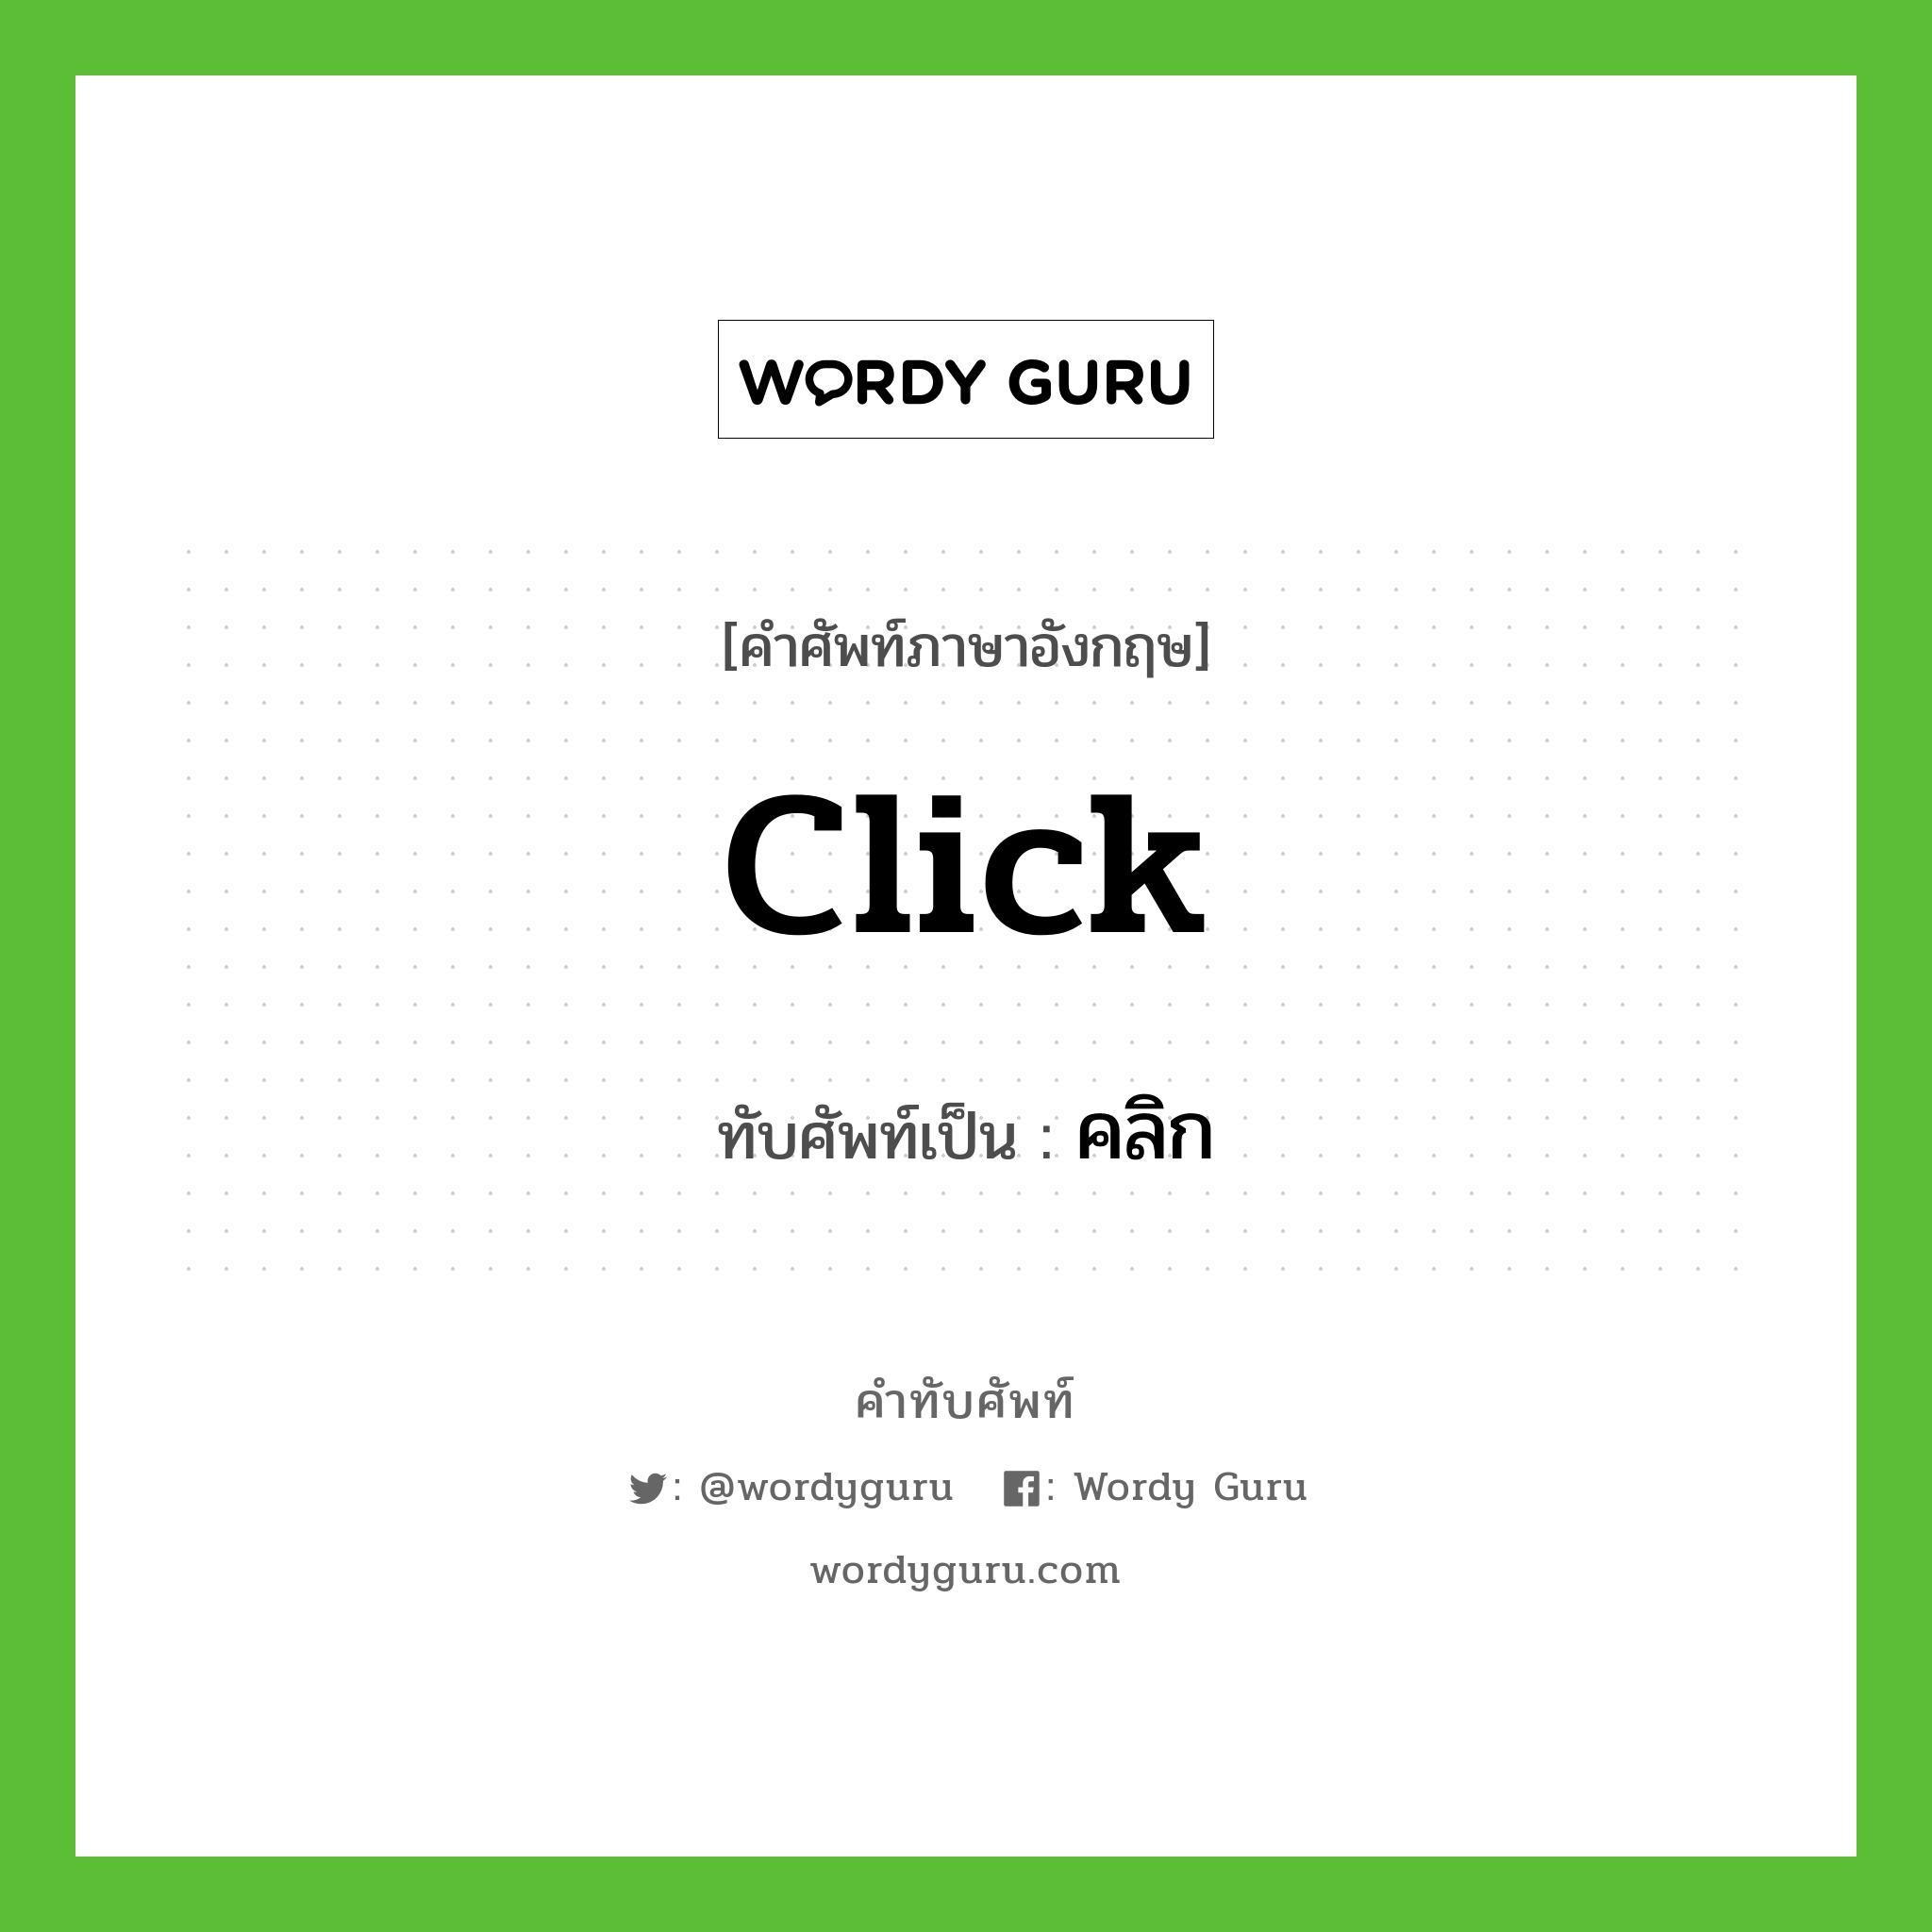 click เขียนเป็นคำไทยว่าอะไร?, คำศัพท์ภาษาอังกฤษ click ทับศัพท์เป็น คลิก